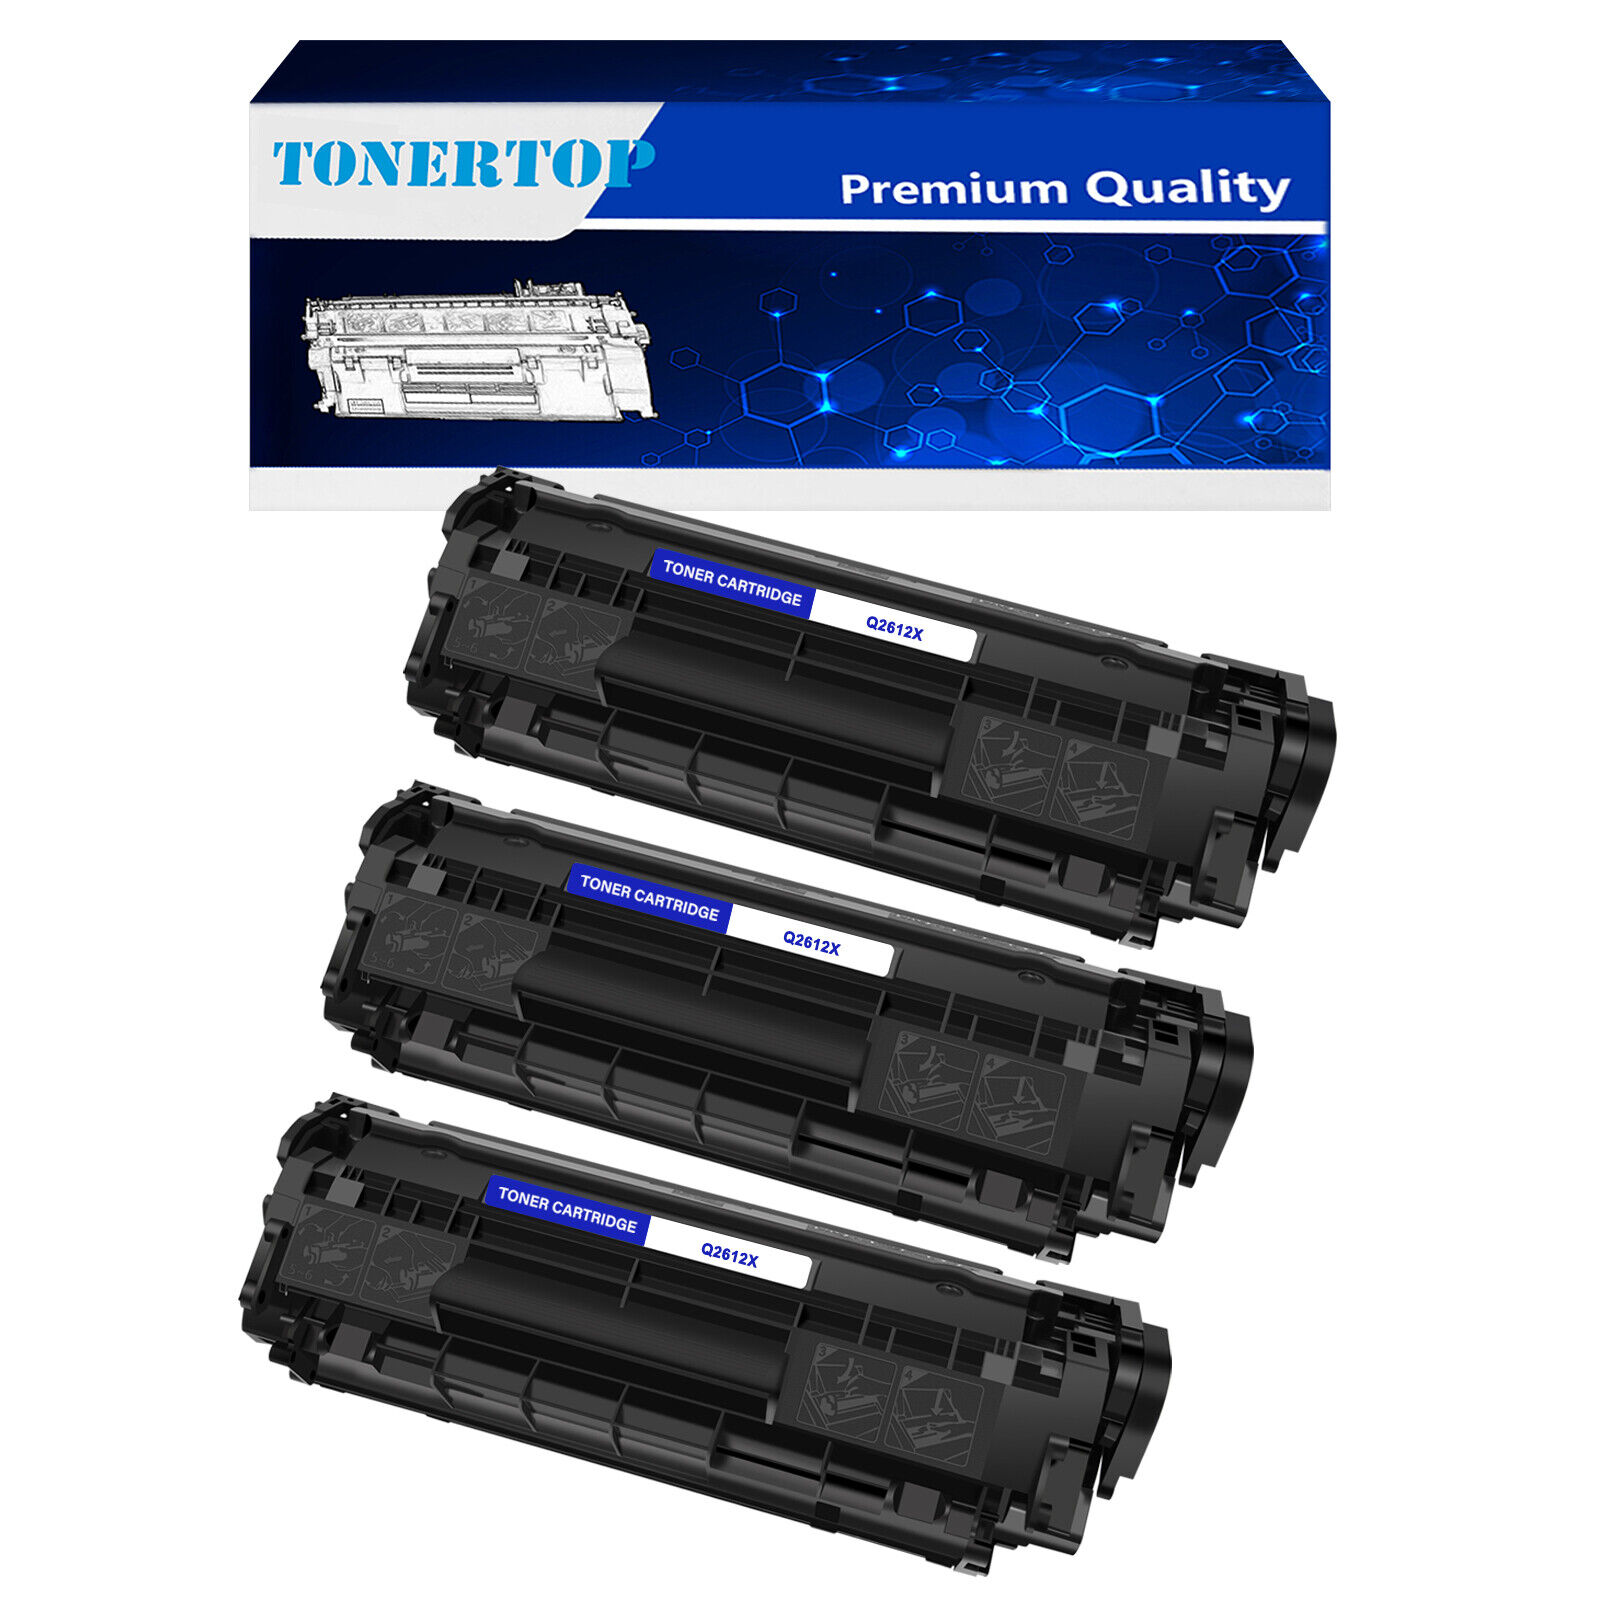 3PK BK Q2612X 12X Toner Cartridge Fits for HP LaserJet 3050 3030 3052 3055 3015